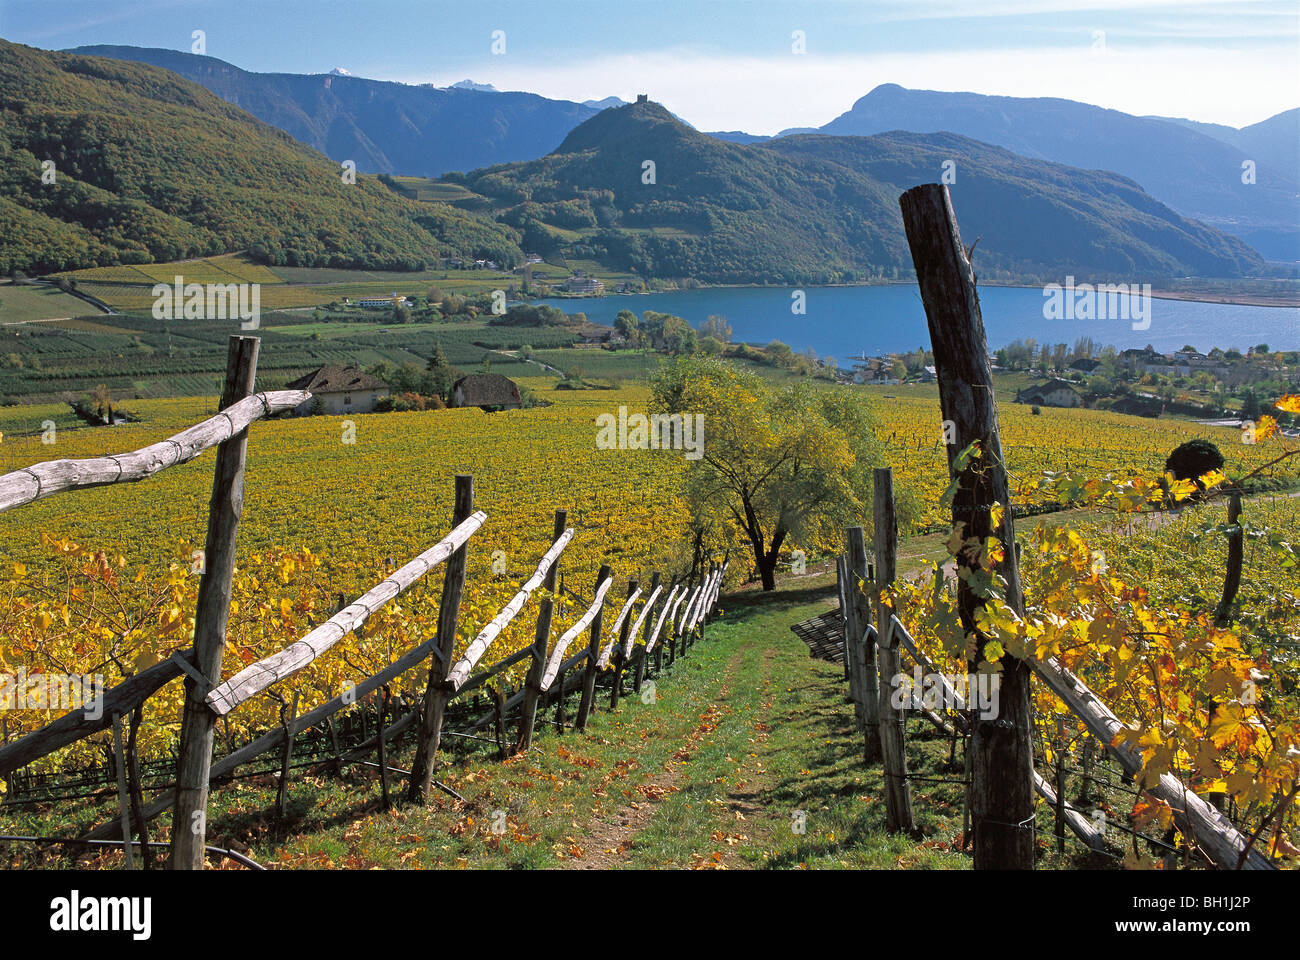 Paesaggio autunnale, Lago di Caldaro con vigneti, Kaltern an der Weinstrasse, Alto Adige, Italia Foto Stock